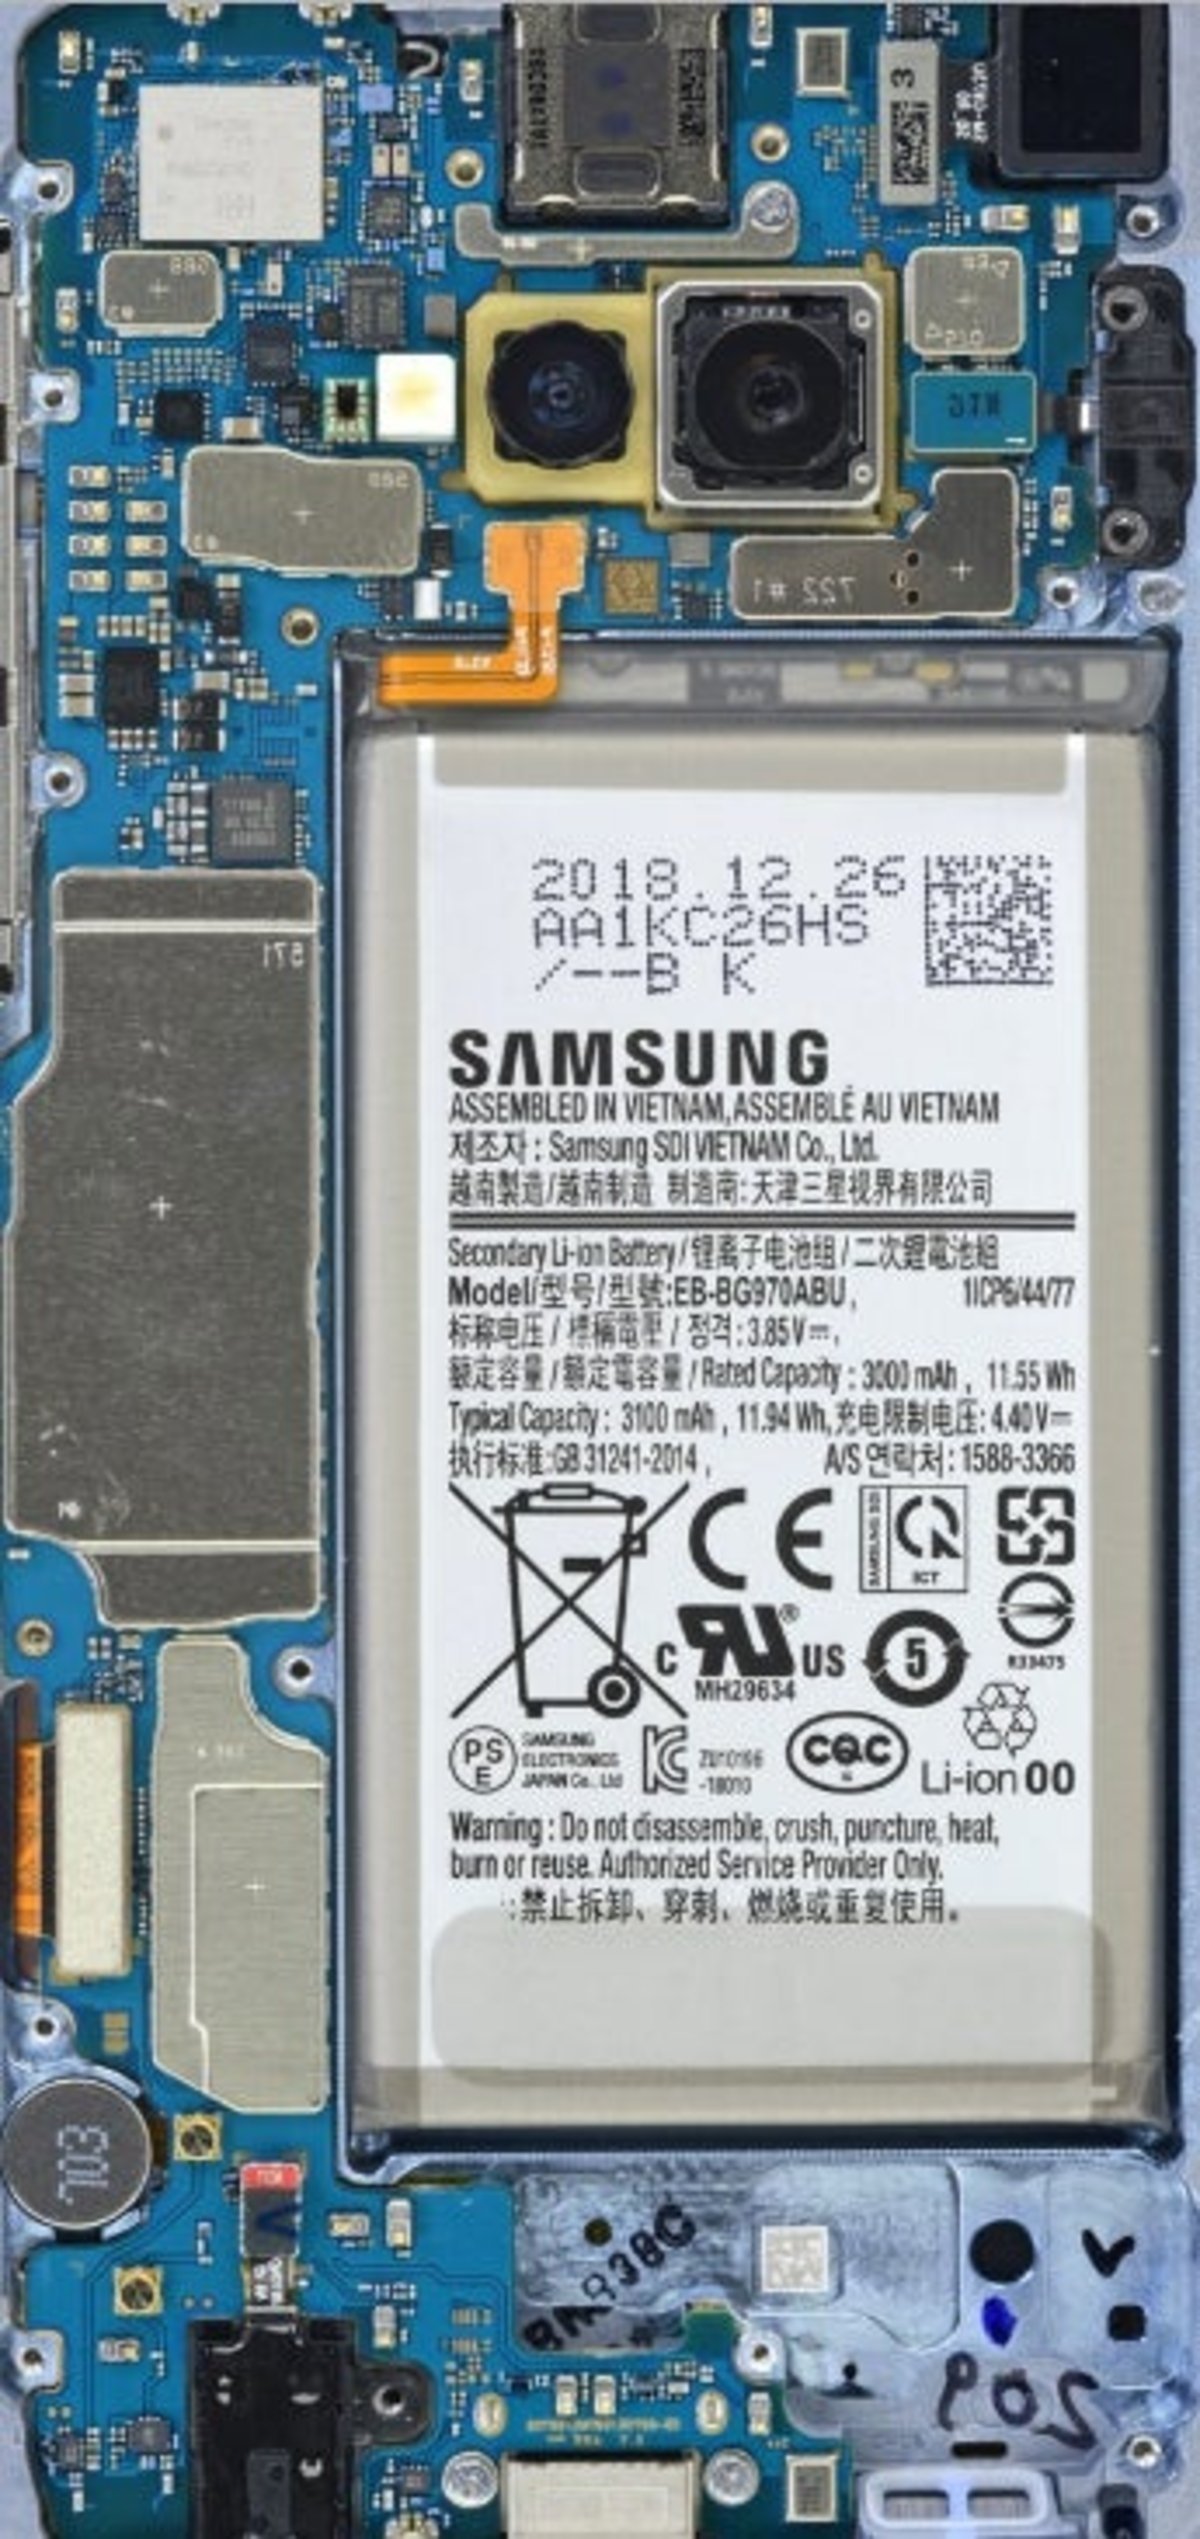 Samsung Galaxy S10 fondos pantalla